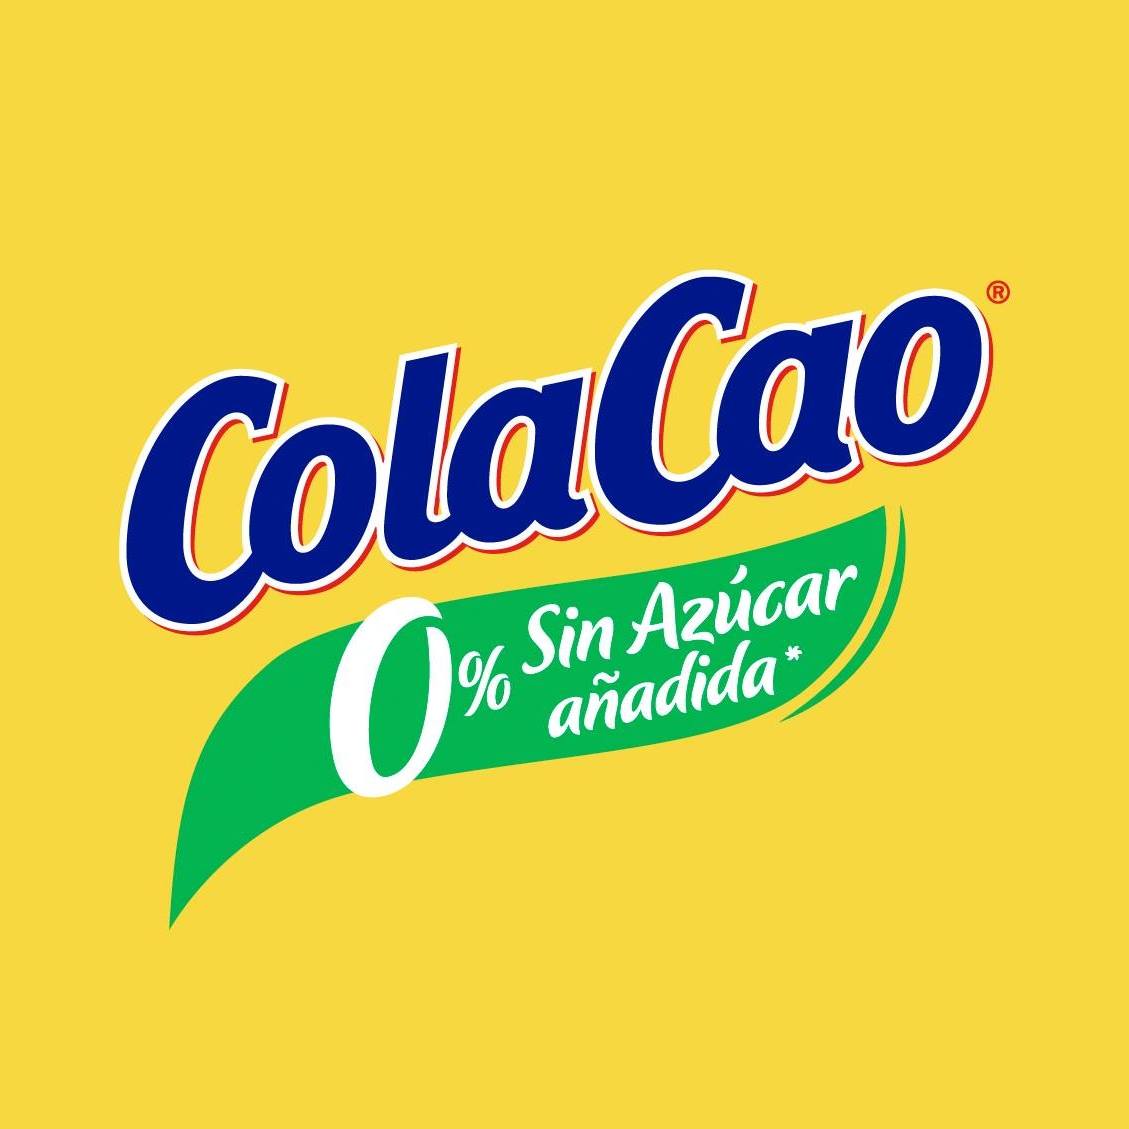 Cola Cao Chile